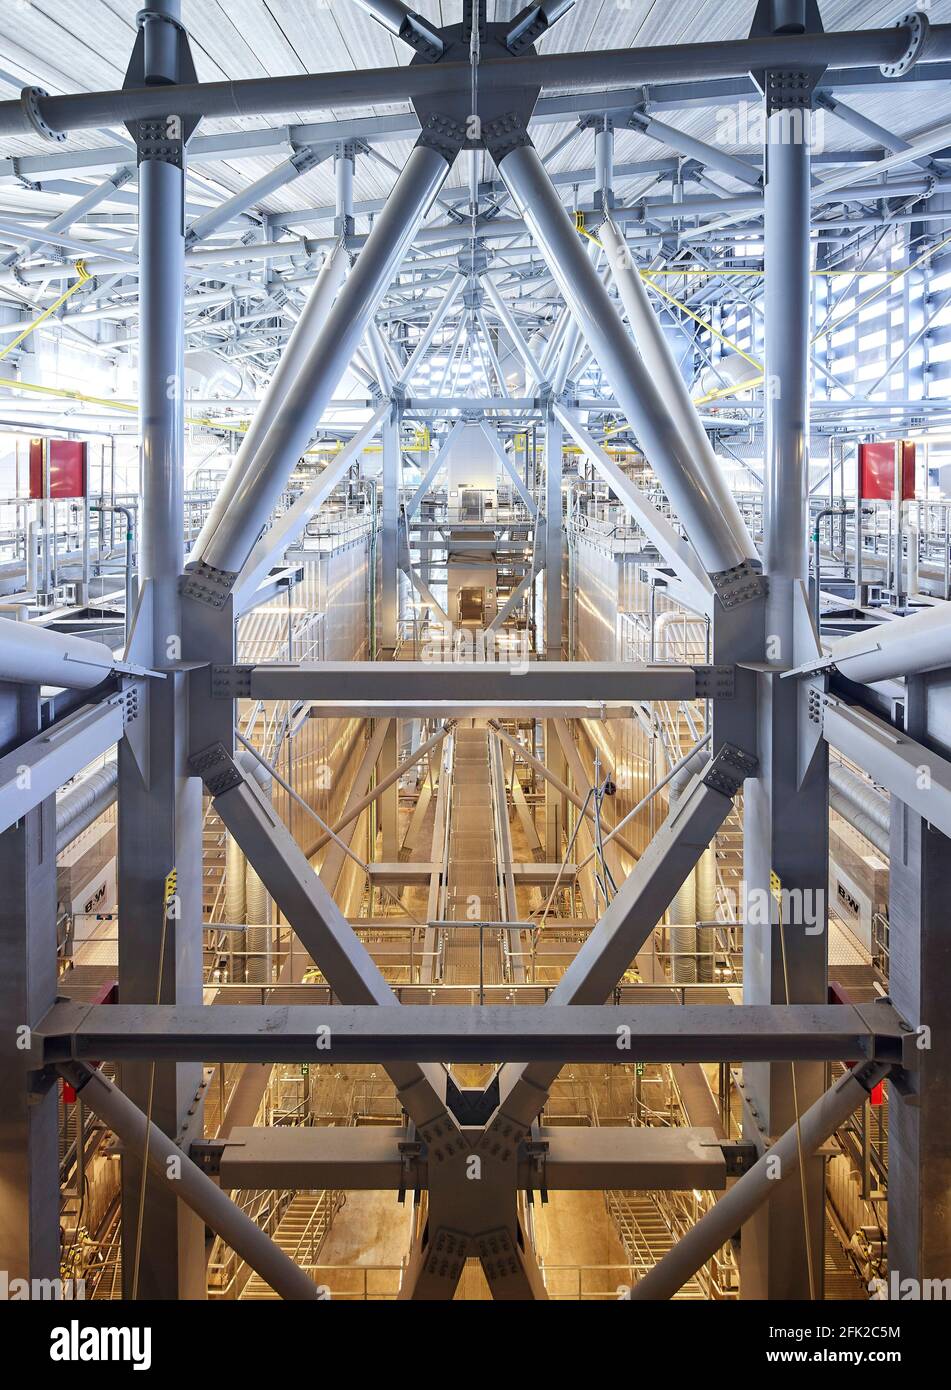 Innenraum der Industrieanlage. Kraftwerk CoppenHill, Kopenhagen, Dänemark. Architekt: BIG Bjarke Ingels Group, 2019. Stockfoto